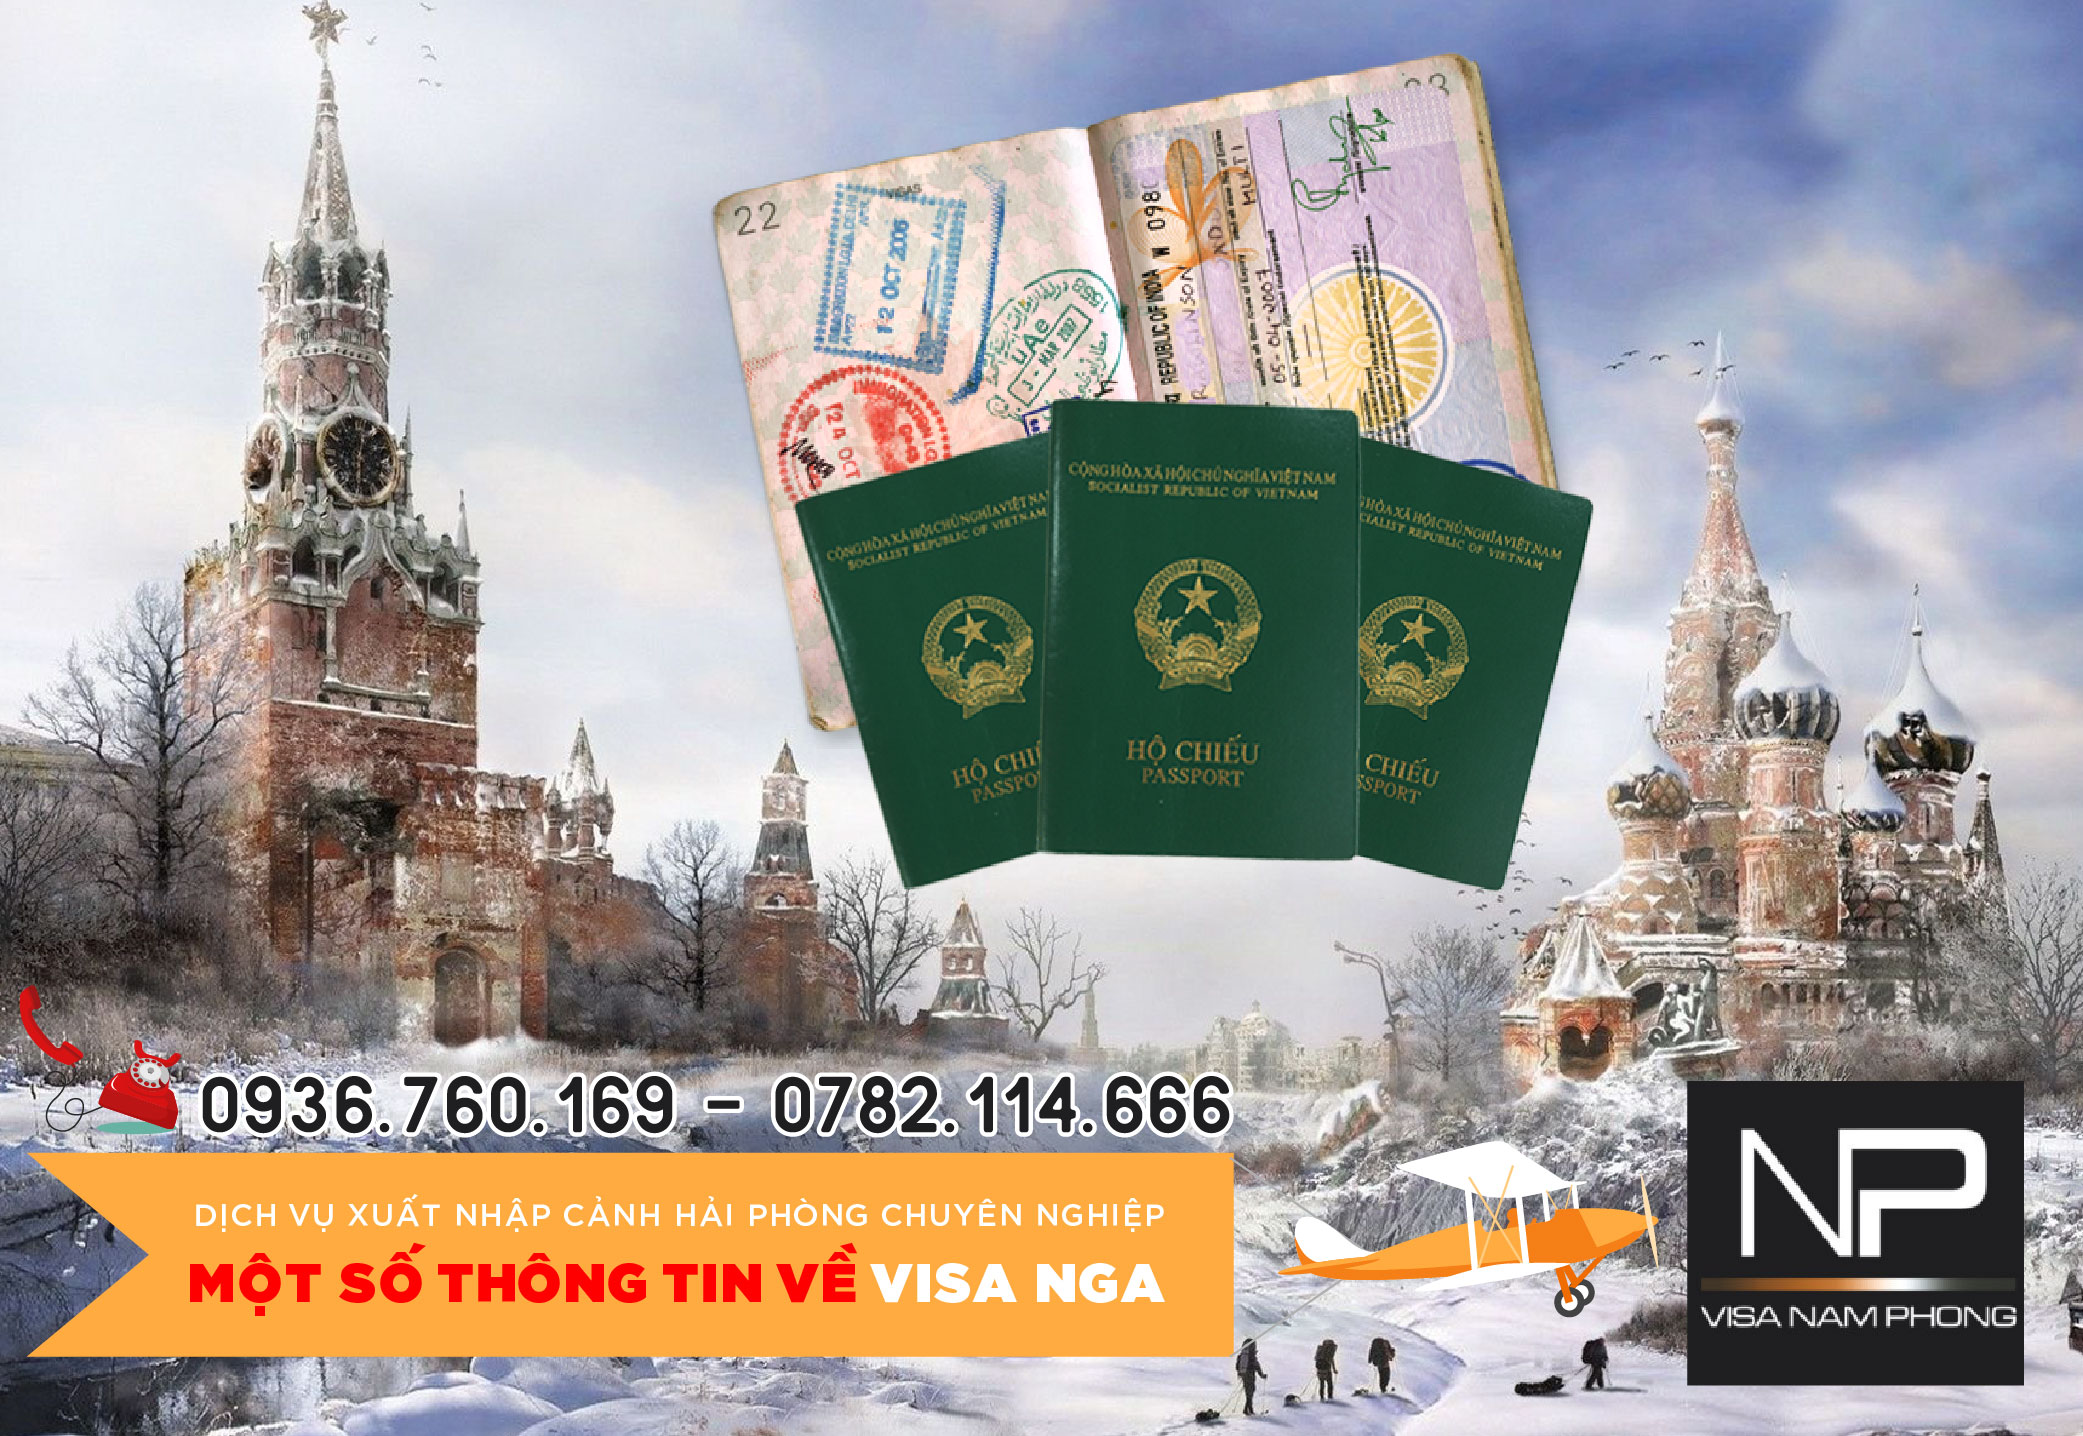 Tư vấn một số thông tin về Visa Nga tại Hải Phòng